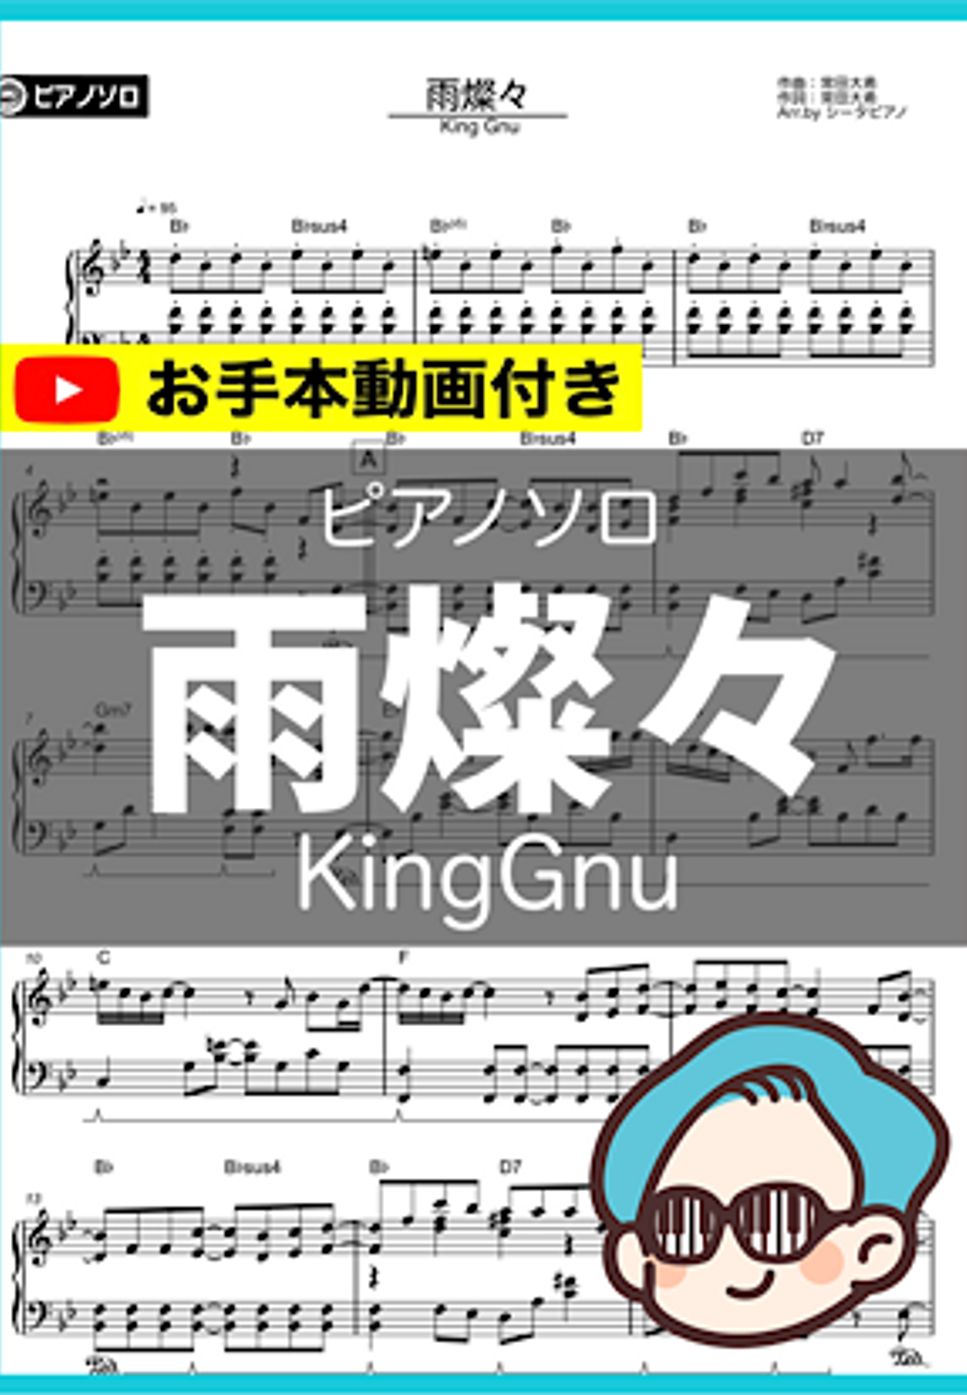 King Gnu - 雨燦々 by シータピアノ